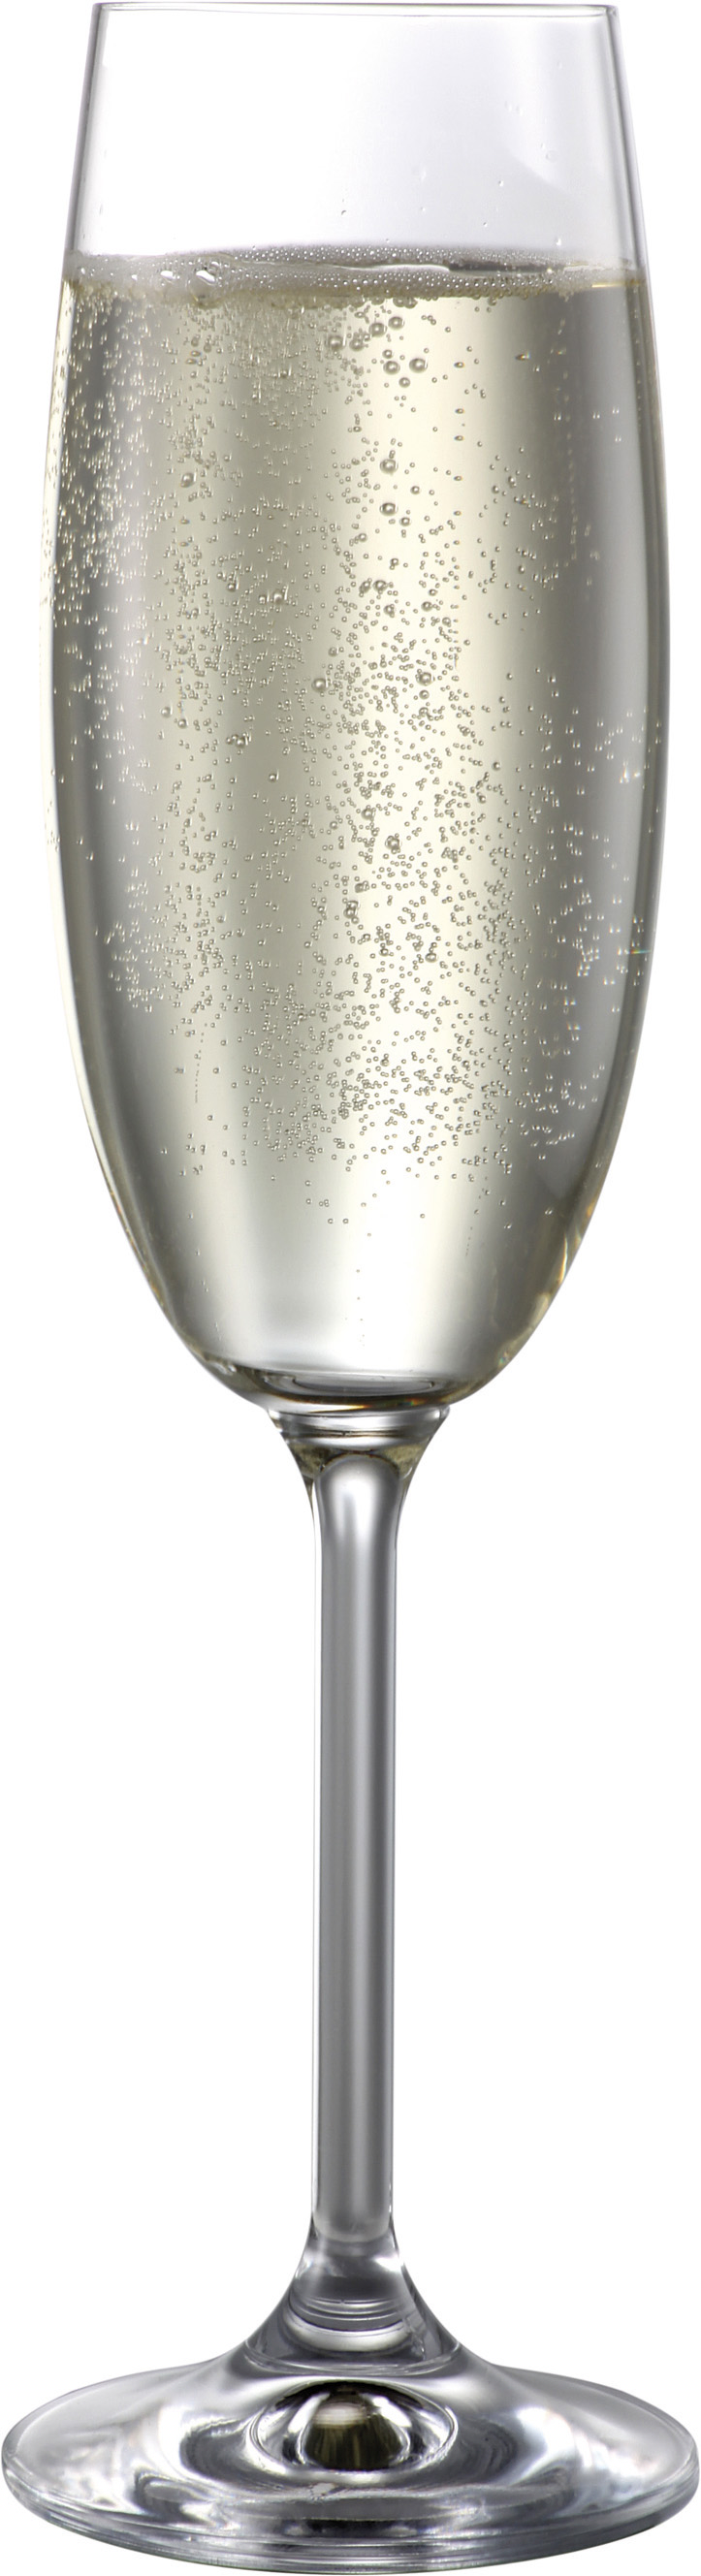 BOHEMIA CRISTAL 波尔卡-娜塔莉香槟酒杯